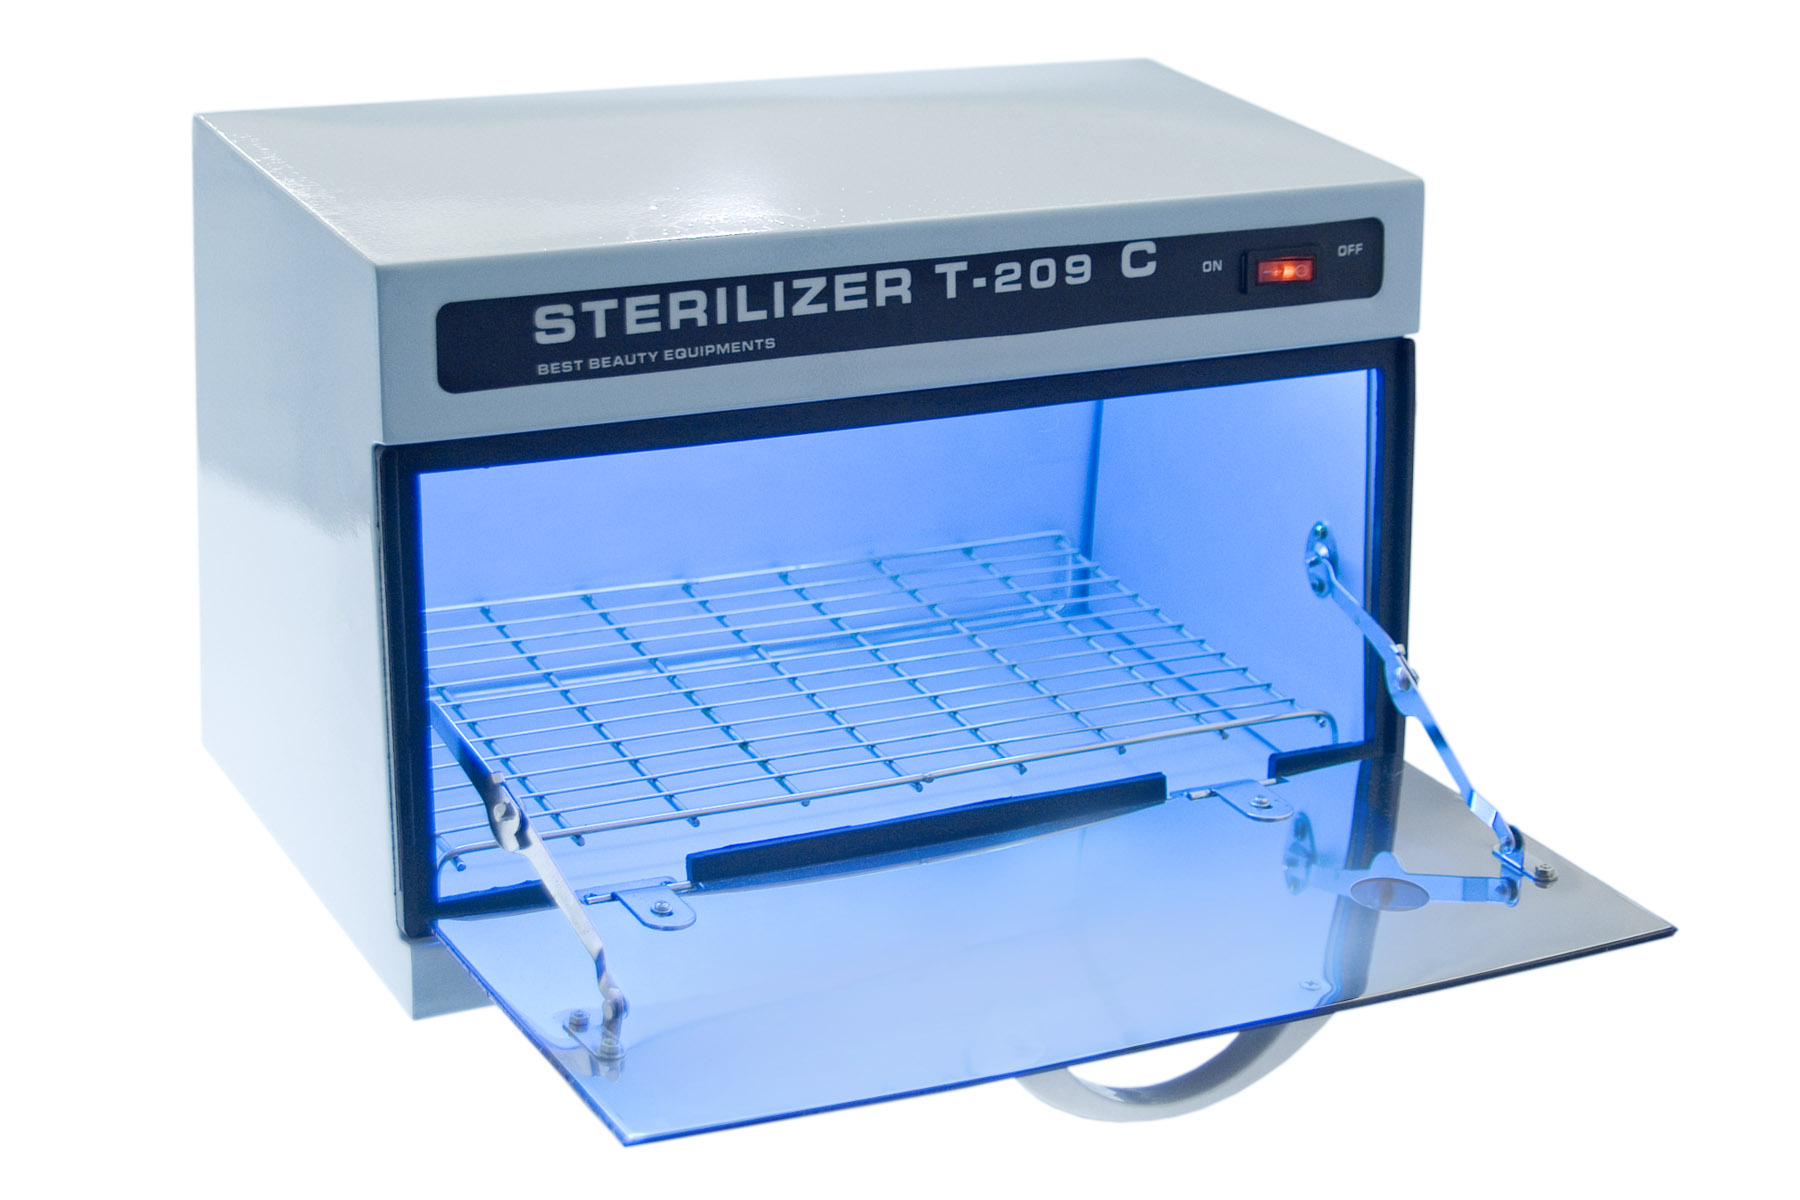 Установка стерилизатор. UV Sterilizer для инструментов. УФ стерилизатор Sterilizer. Стерилизатор конвейерный УФ-1100. Sterilizer t-209.